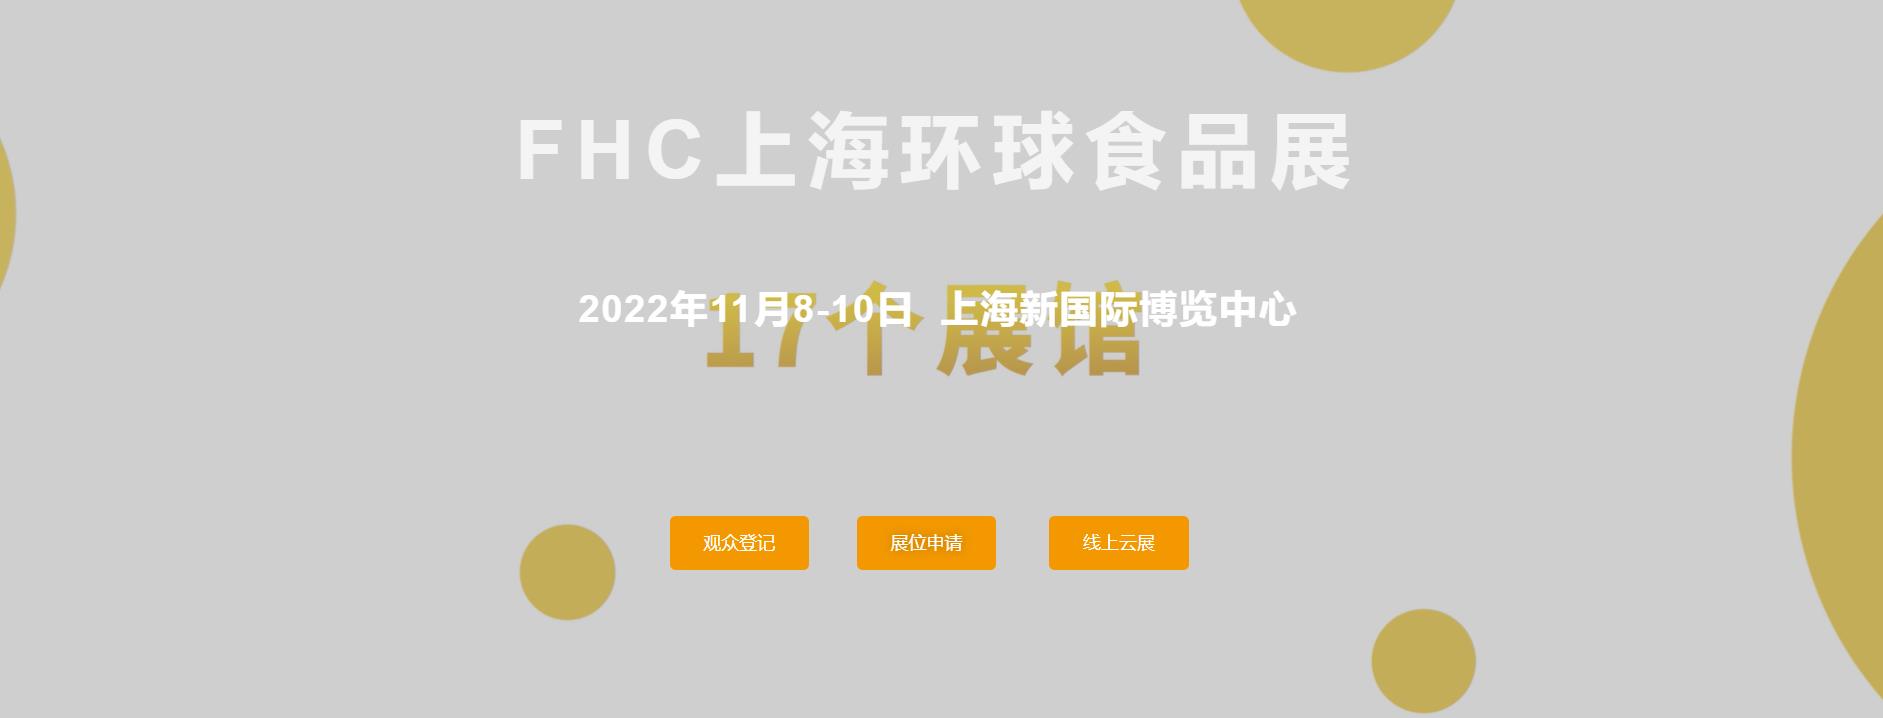 2022第二十六届上海国际食品饮料及餐饮展览会联系电话 摊位预定方法